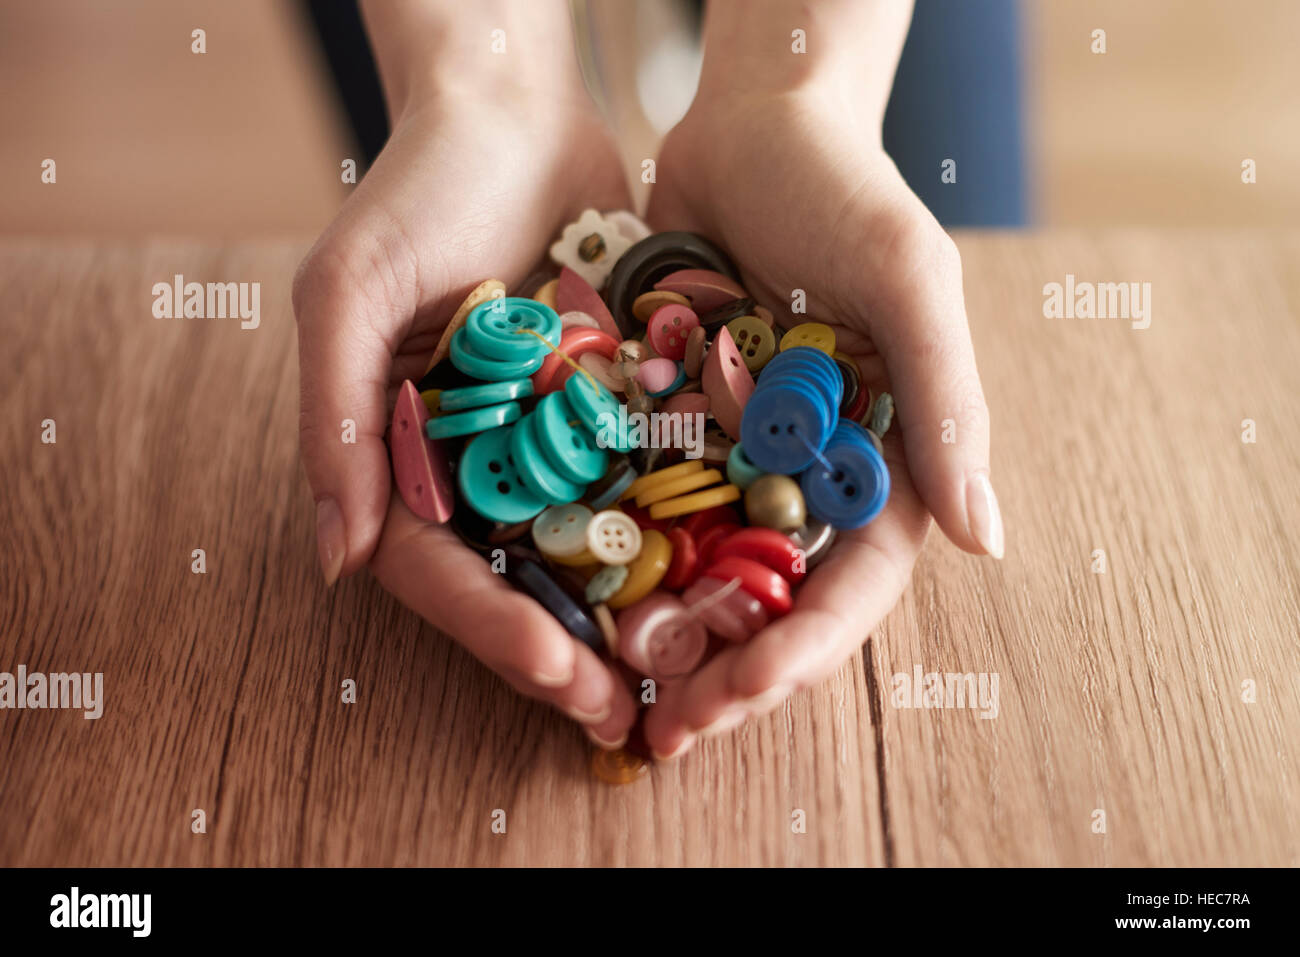 Les mains pleines de boutons colorés Banque D'Images